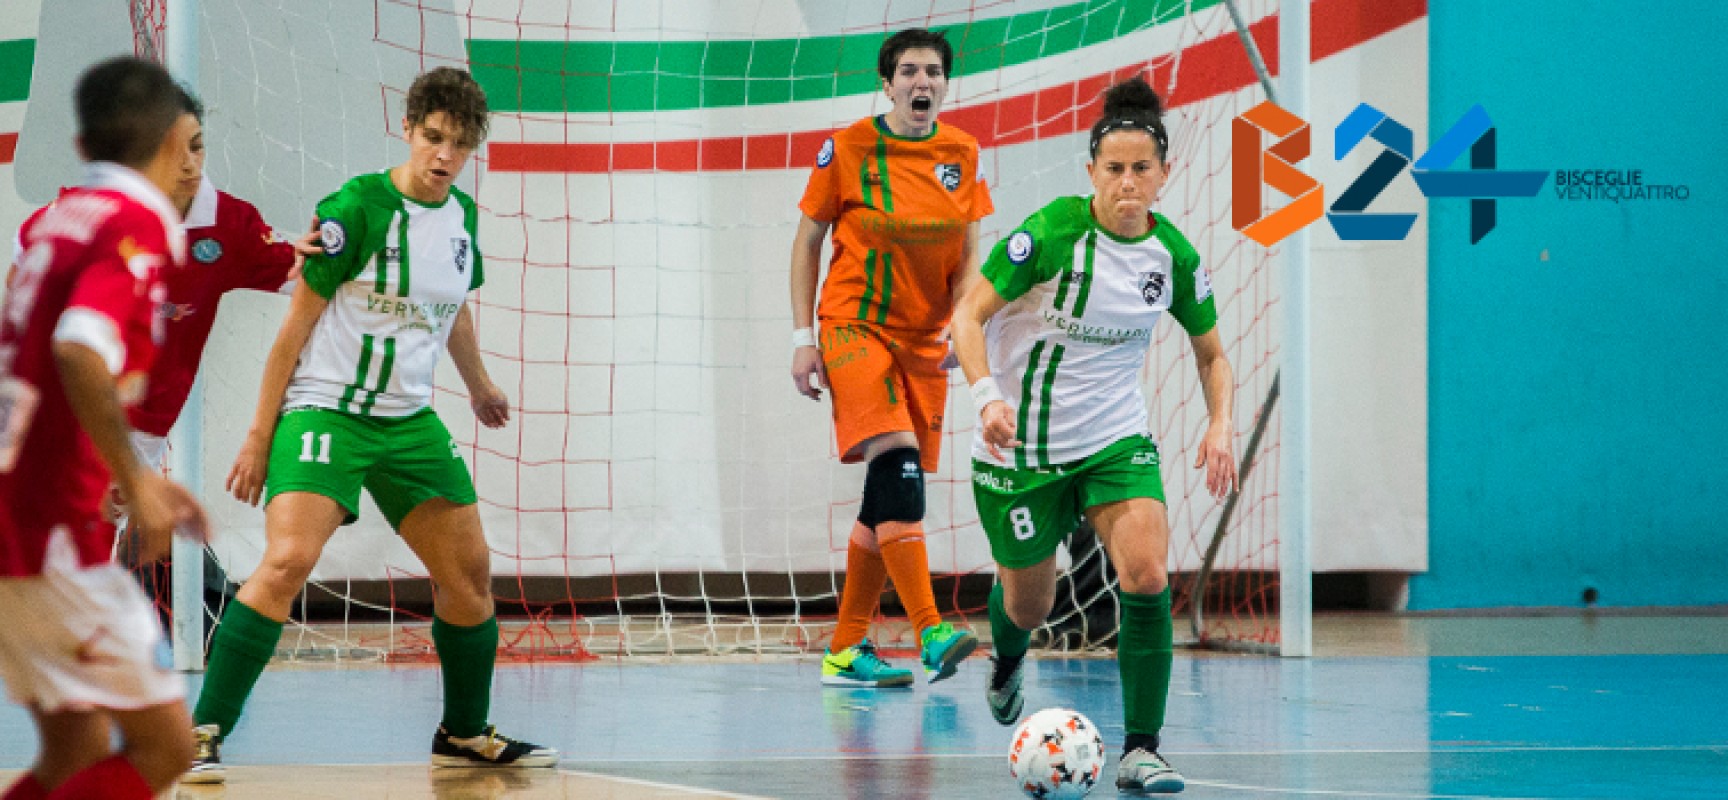 Calcio a 5 femminile, Arcadia a caccia dell’impresa a Colleferro, impegno casalingo per il Futsal Bisceglie